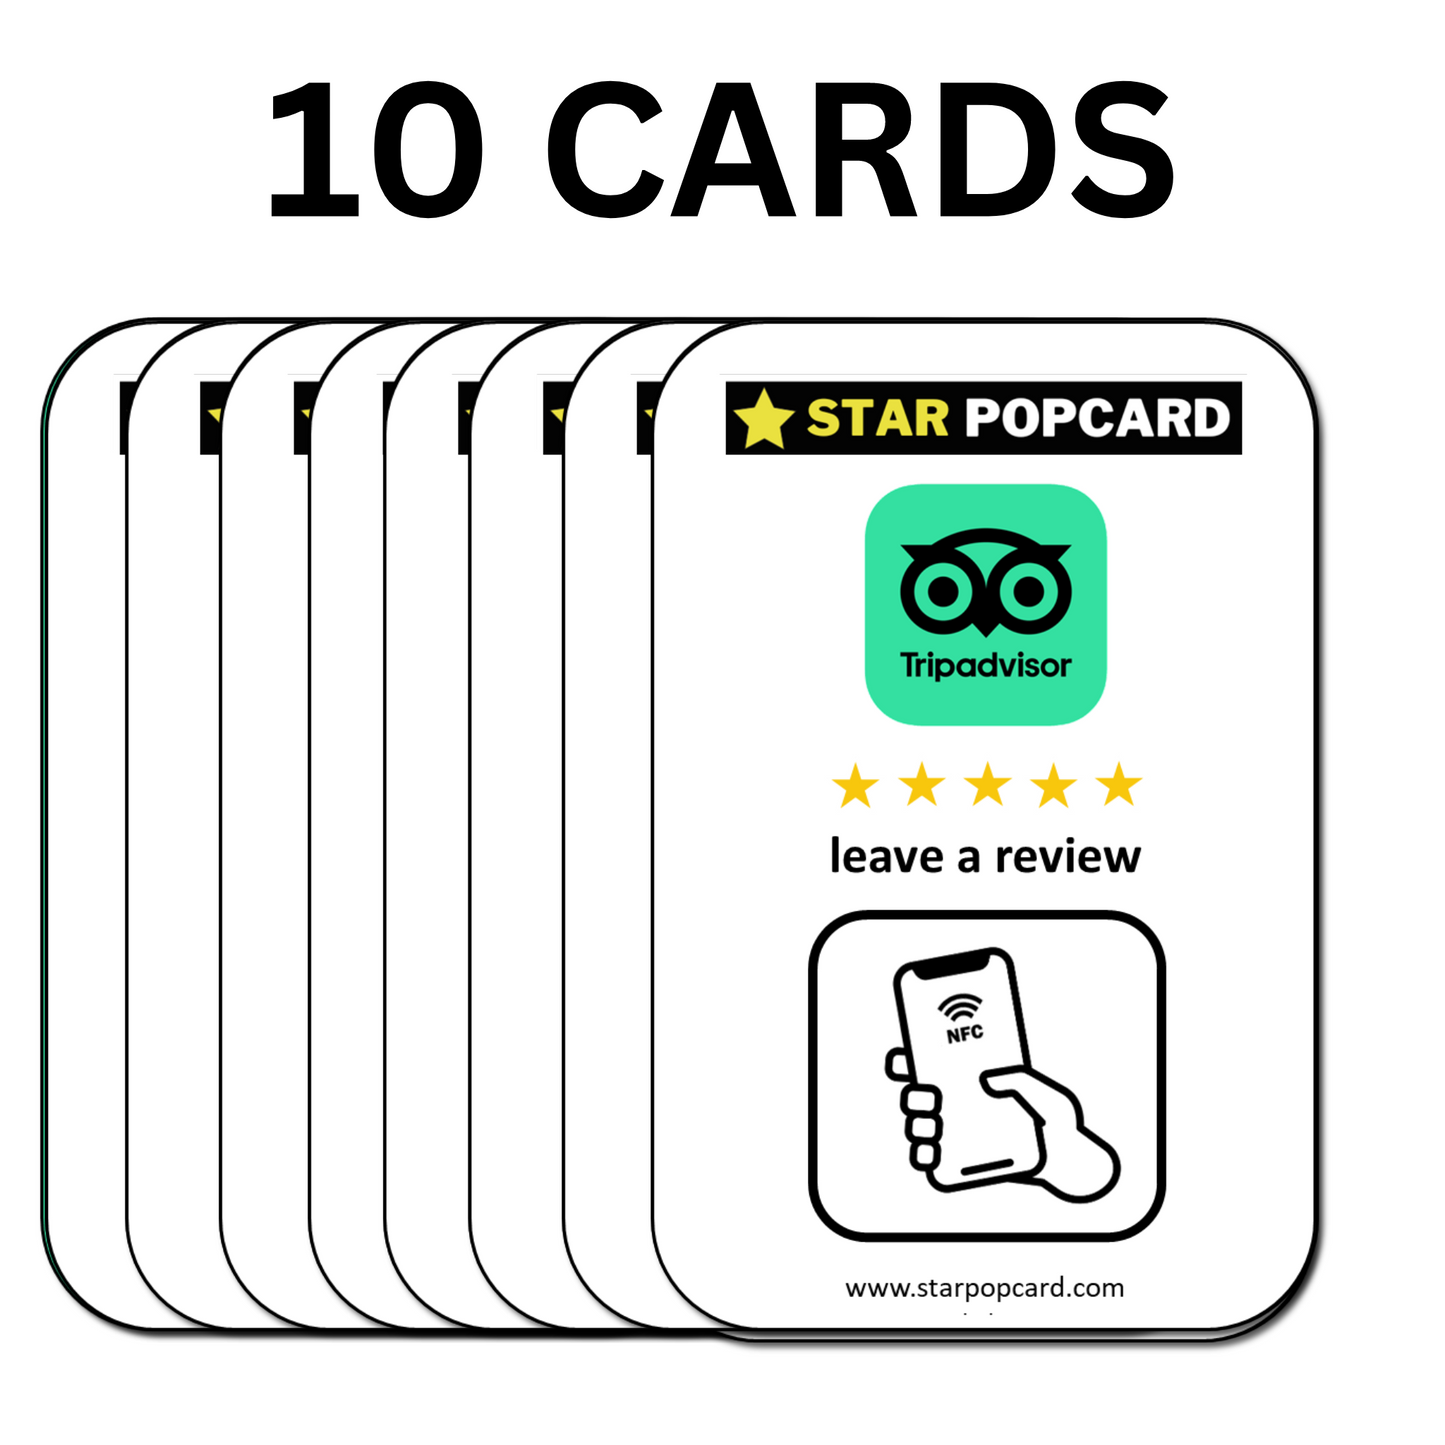 10 CARDS| Tripadvisor